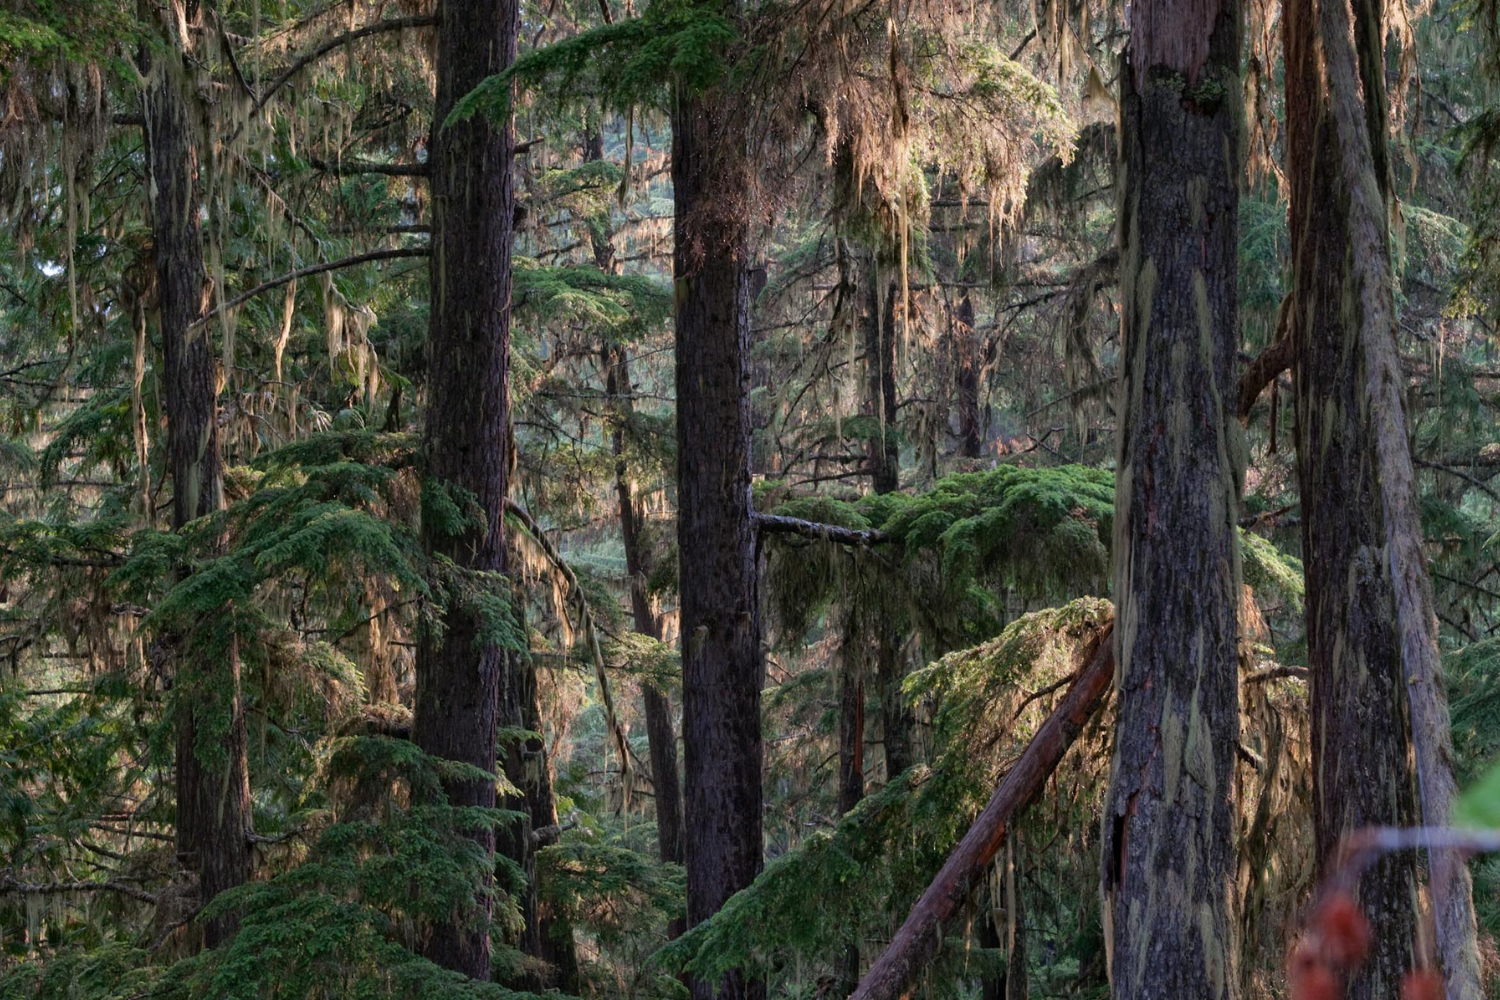 Darkwoods Forest Conservation